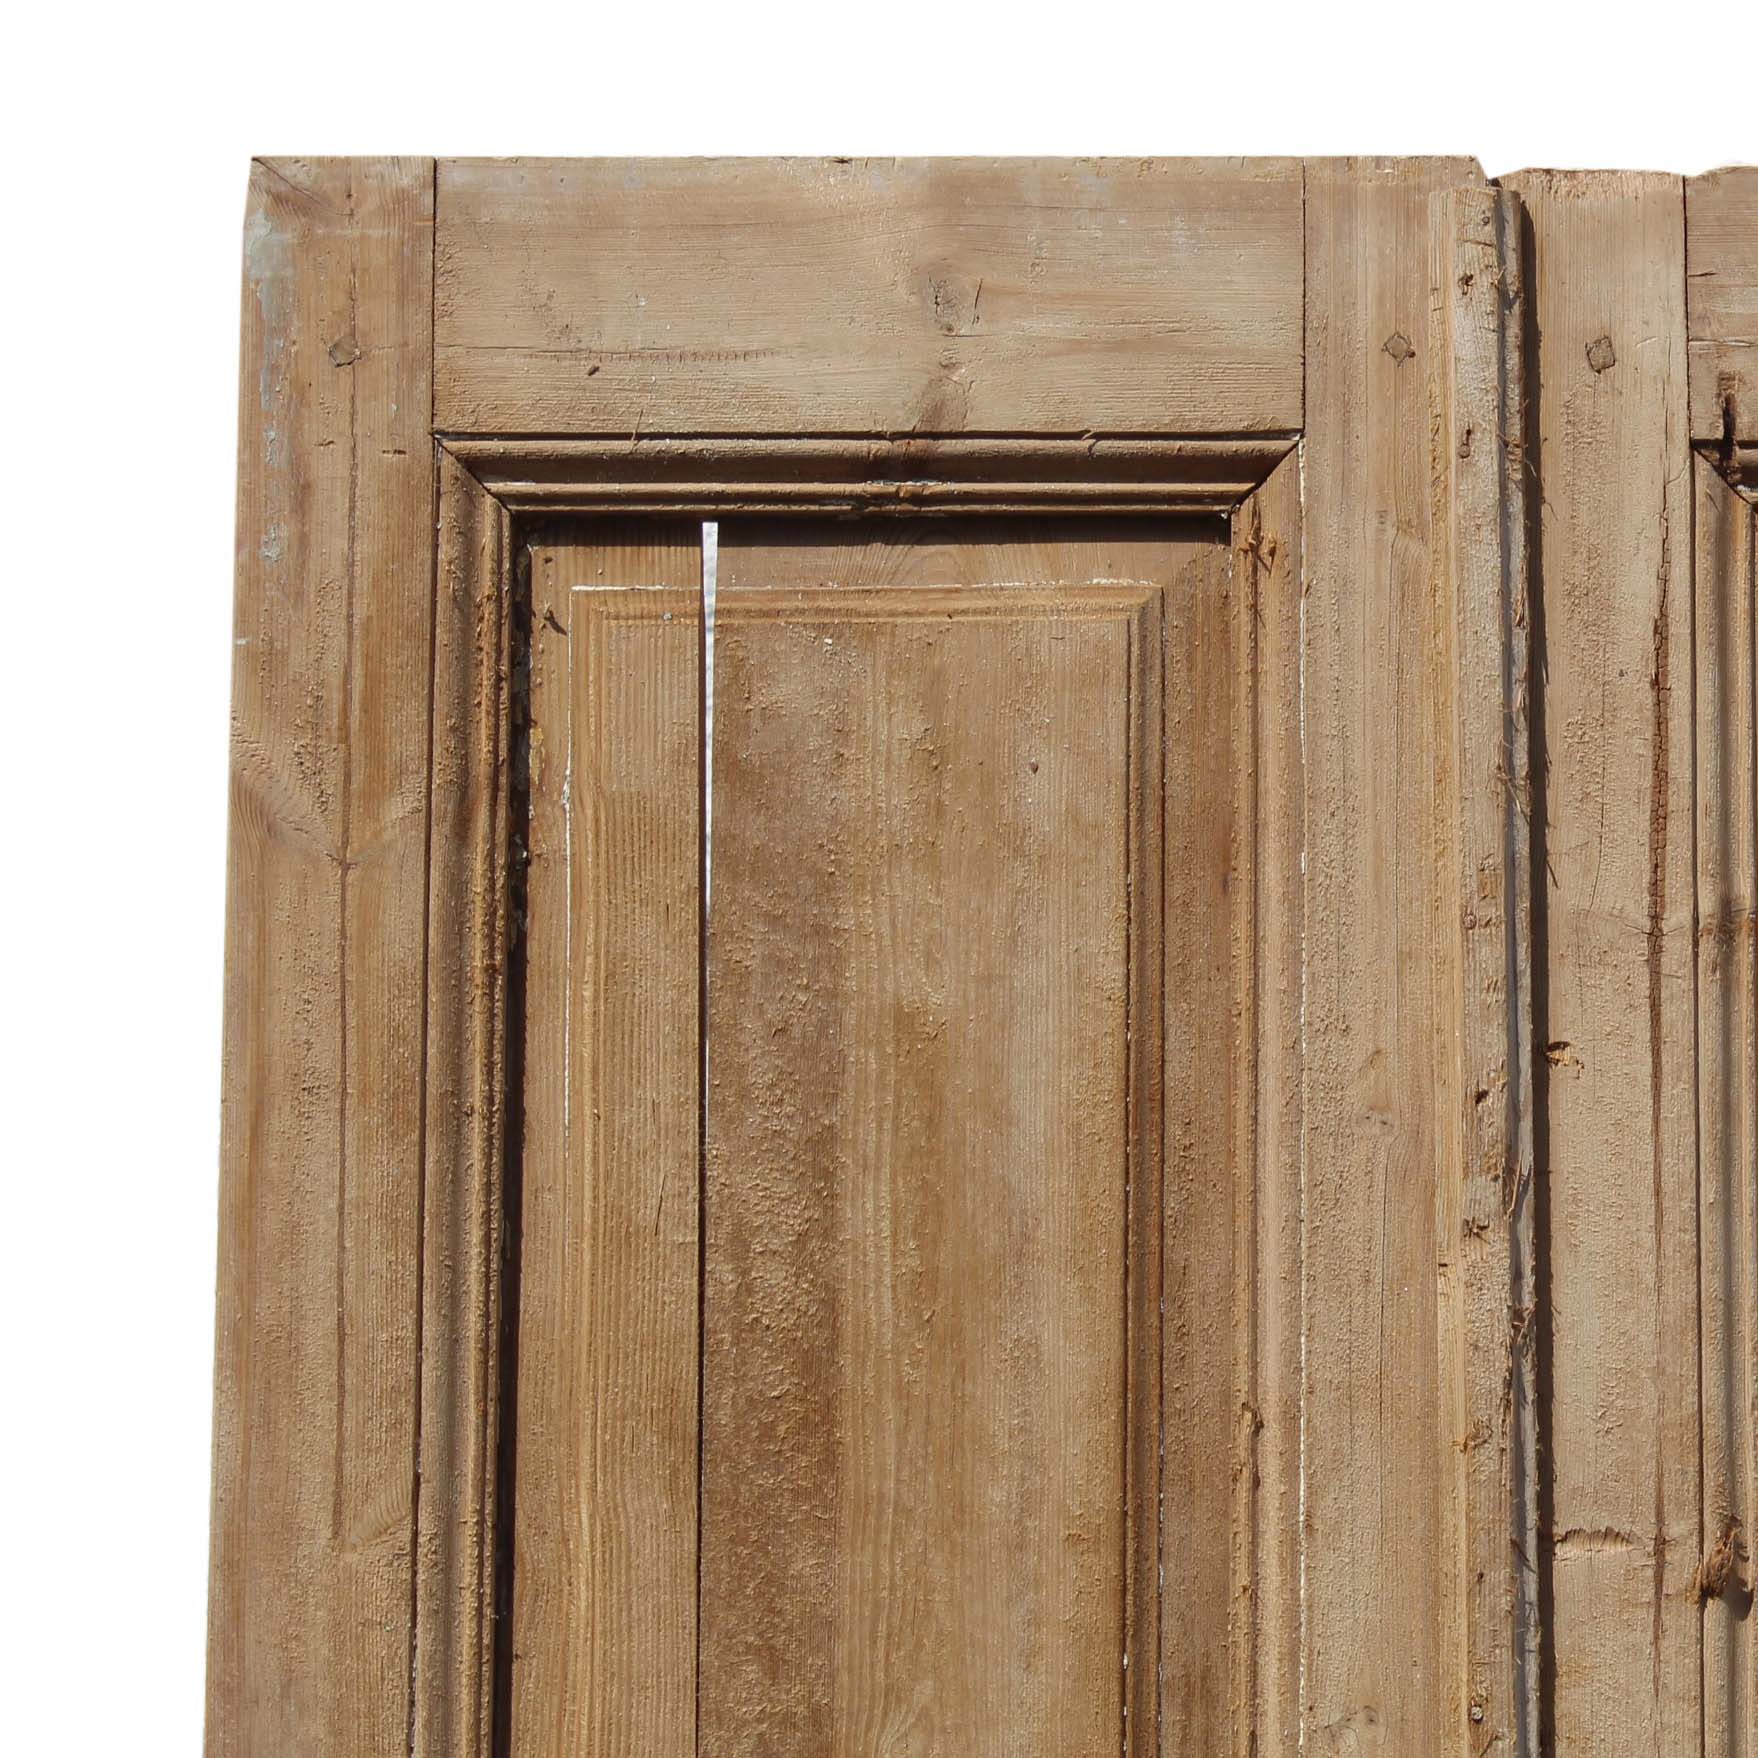 SOLD Pair of Antique 39” Doors-69792